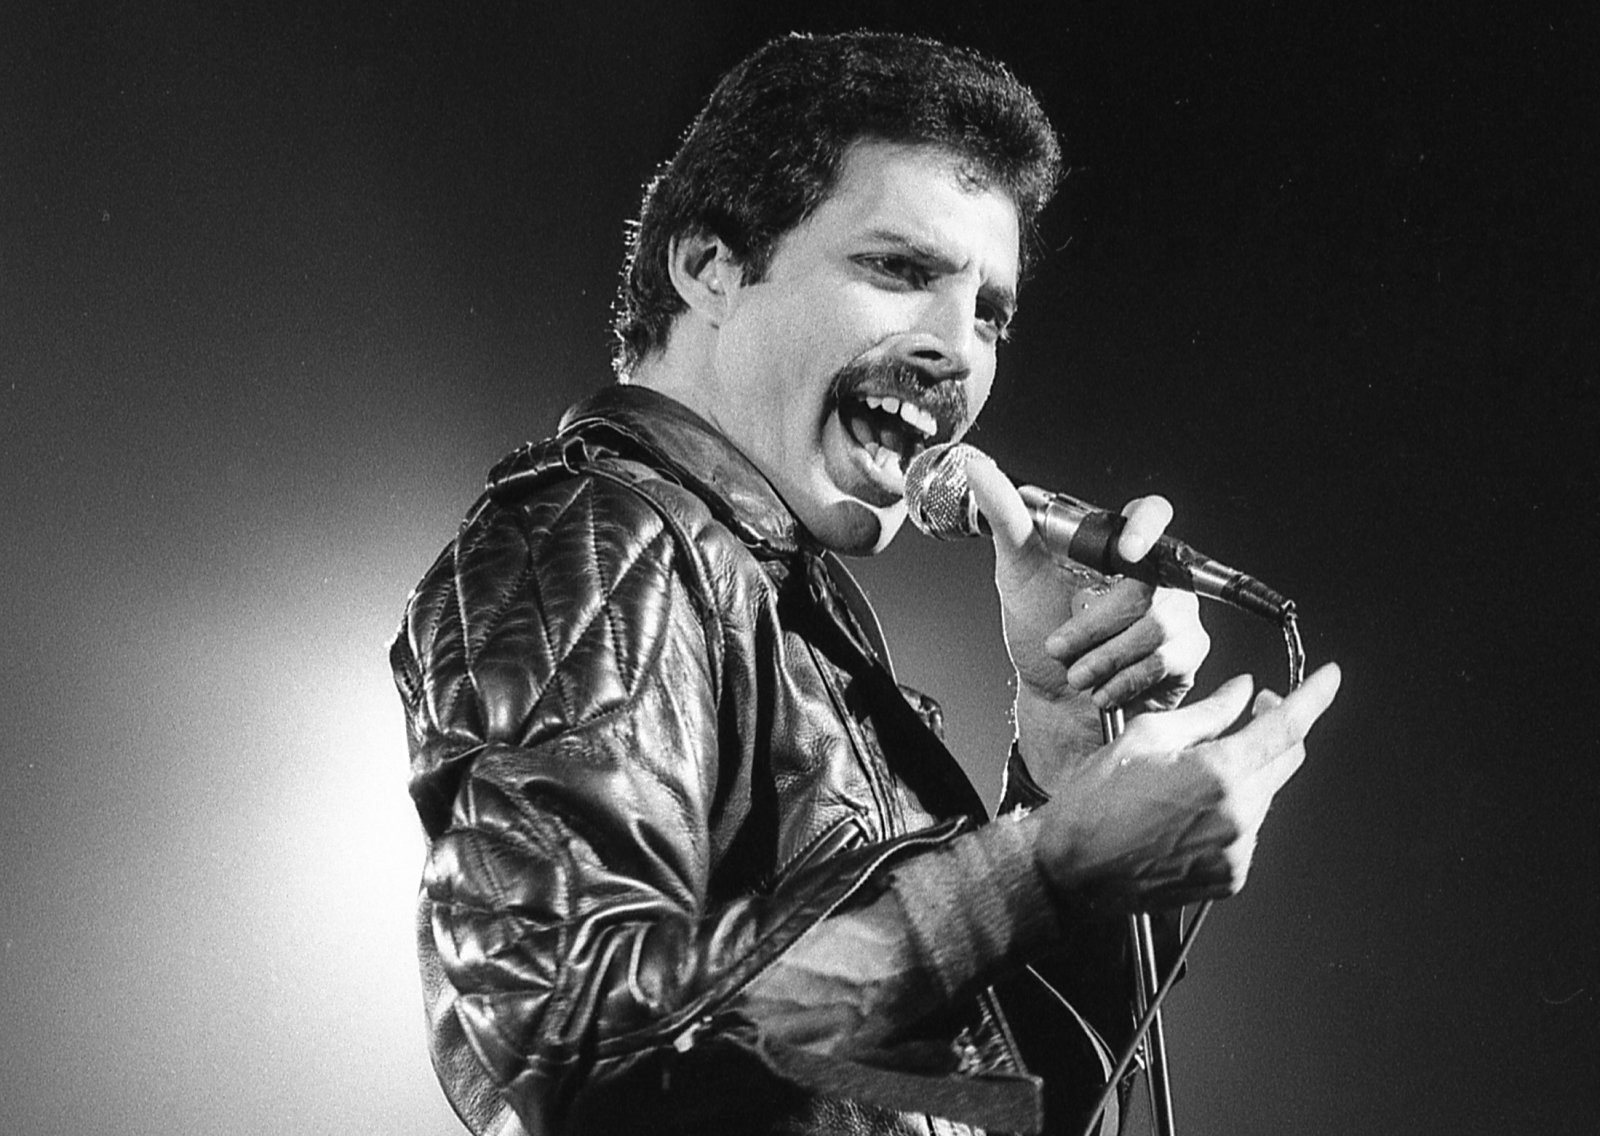 28 vite pas vdekjes së tij, Freddie Mercury vazhdon të bëjë dhurata për familjarët e tij